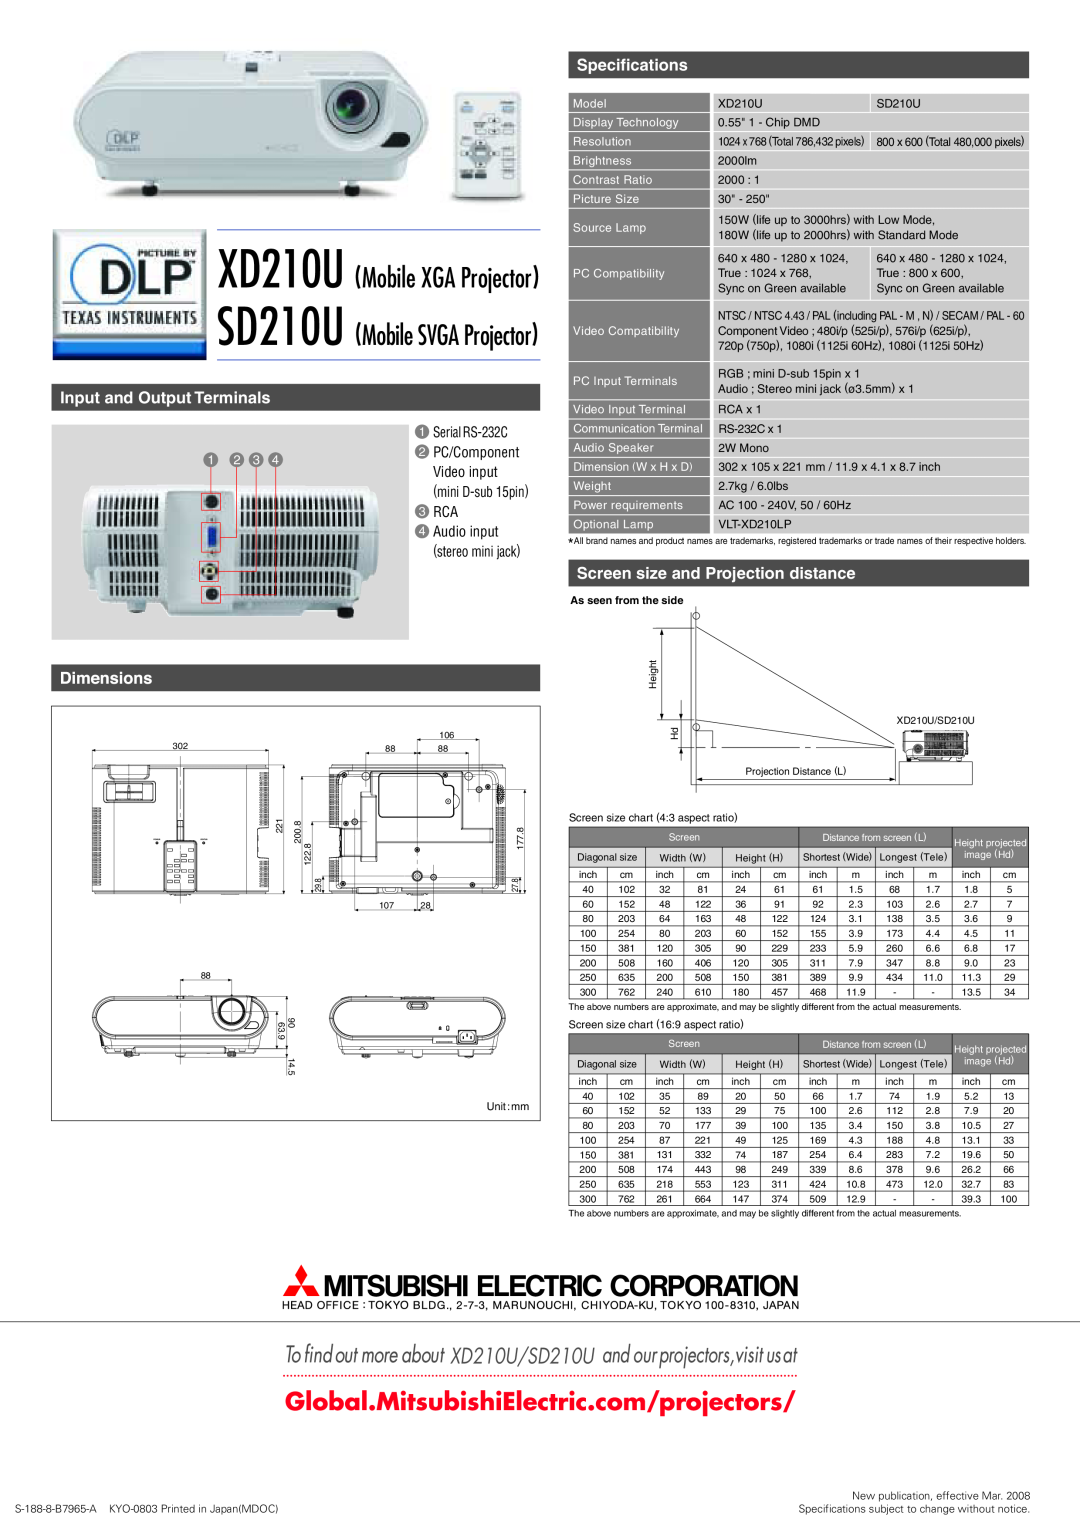 Mitsubishi Electronics manual XD210U/SD210U, XD210U Mobile XGA Projector, SD210U Mobile SVGA Projector, Specifications 